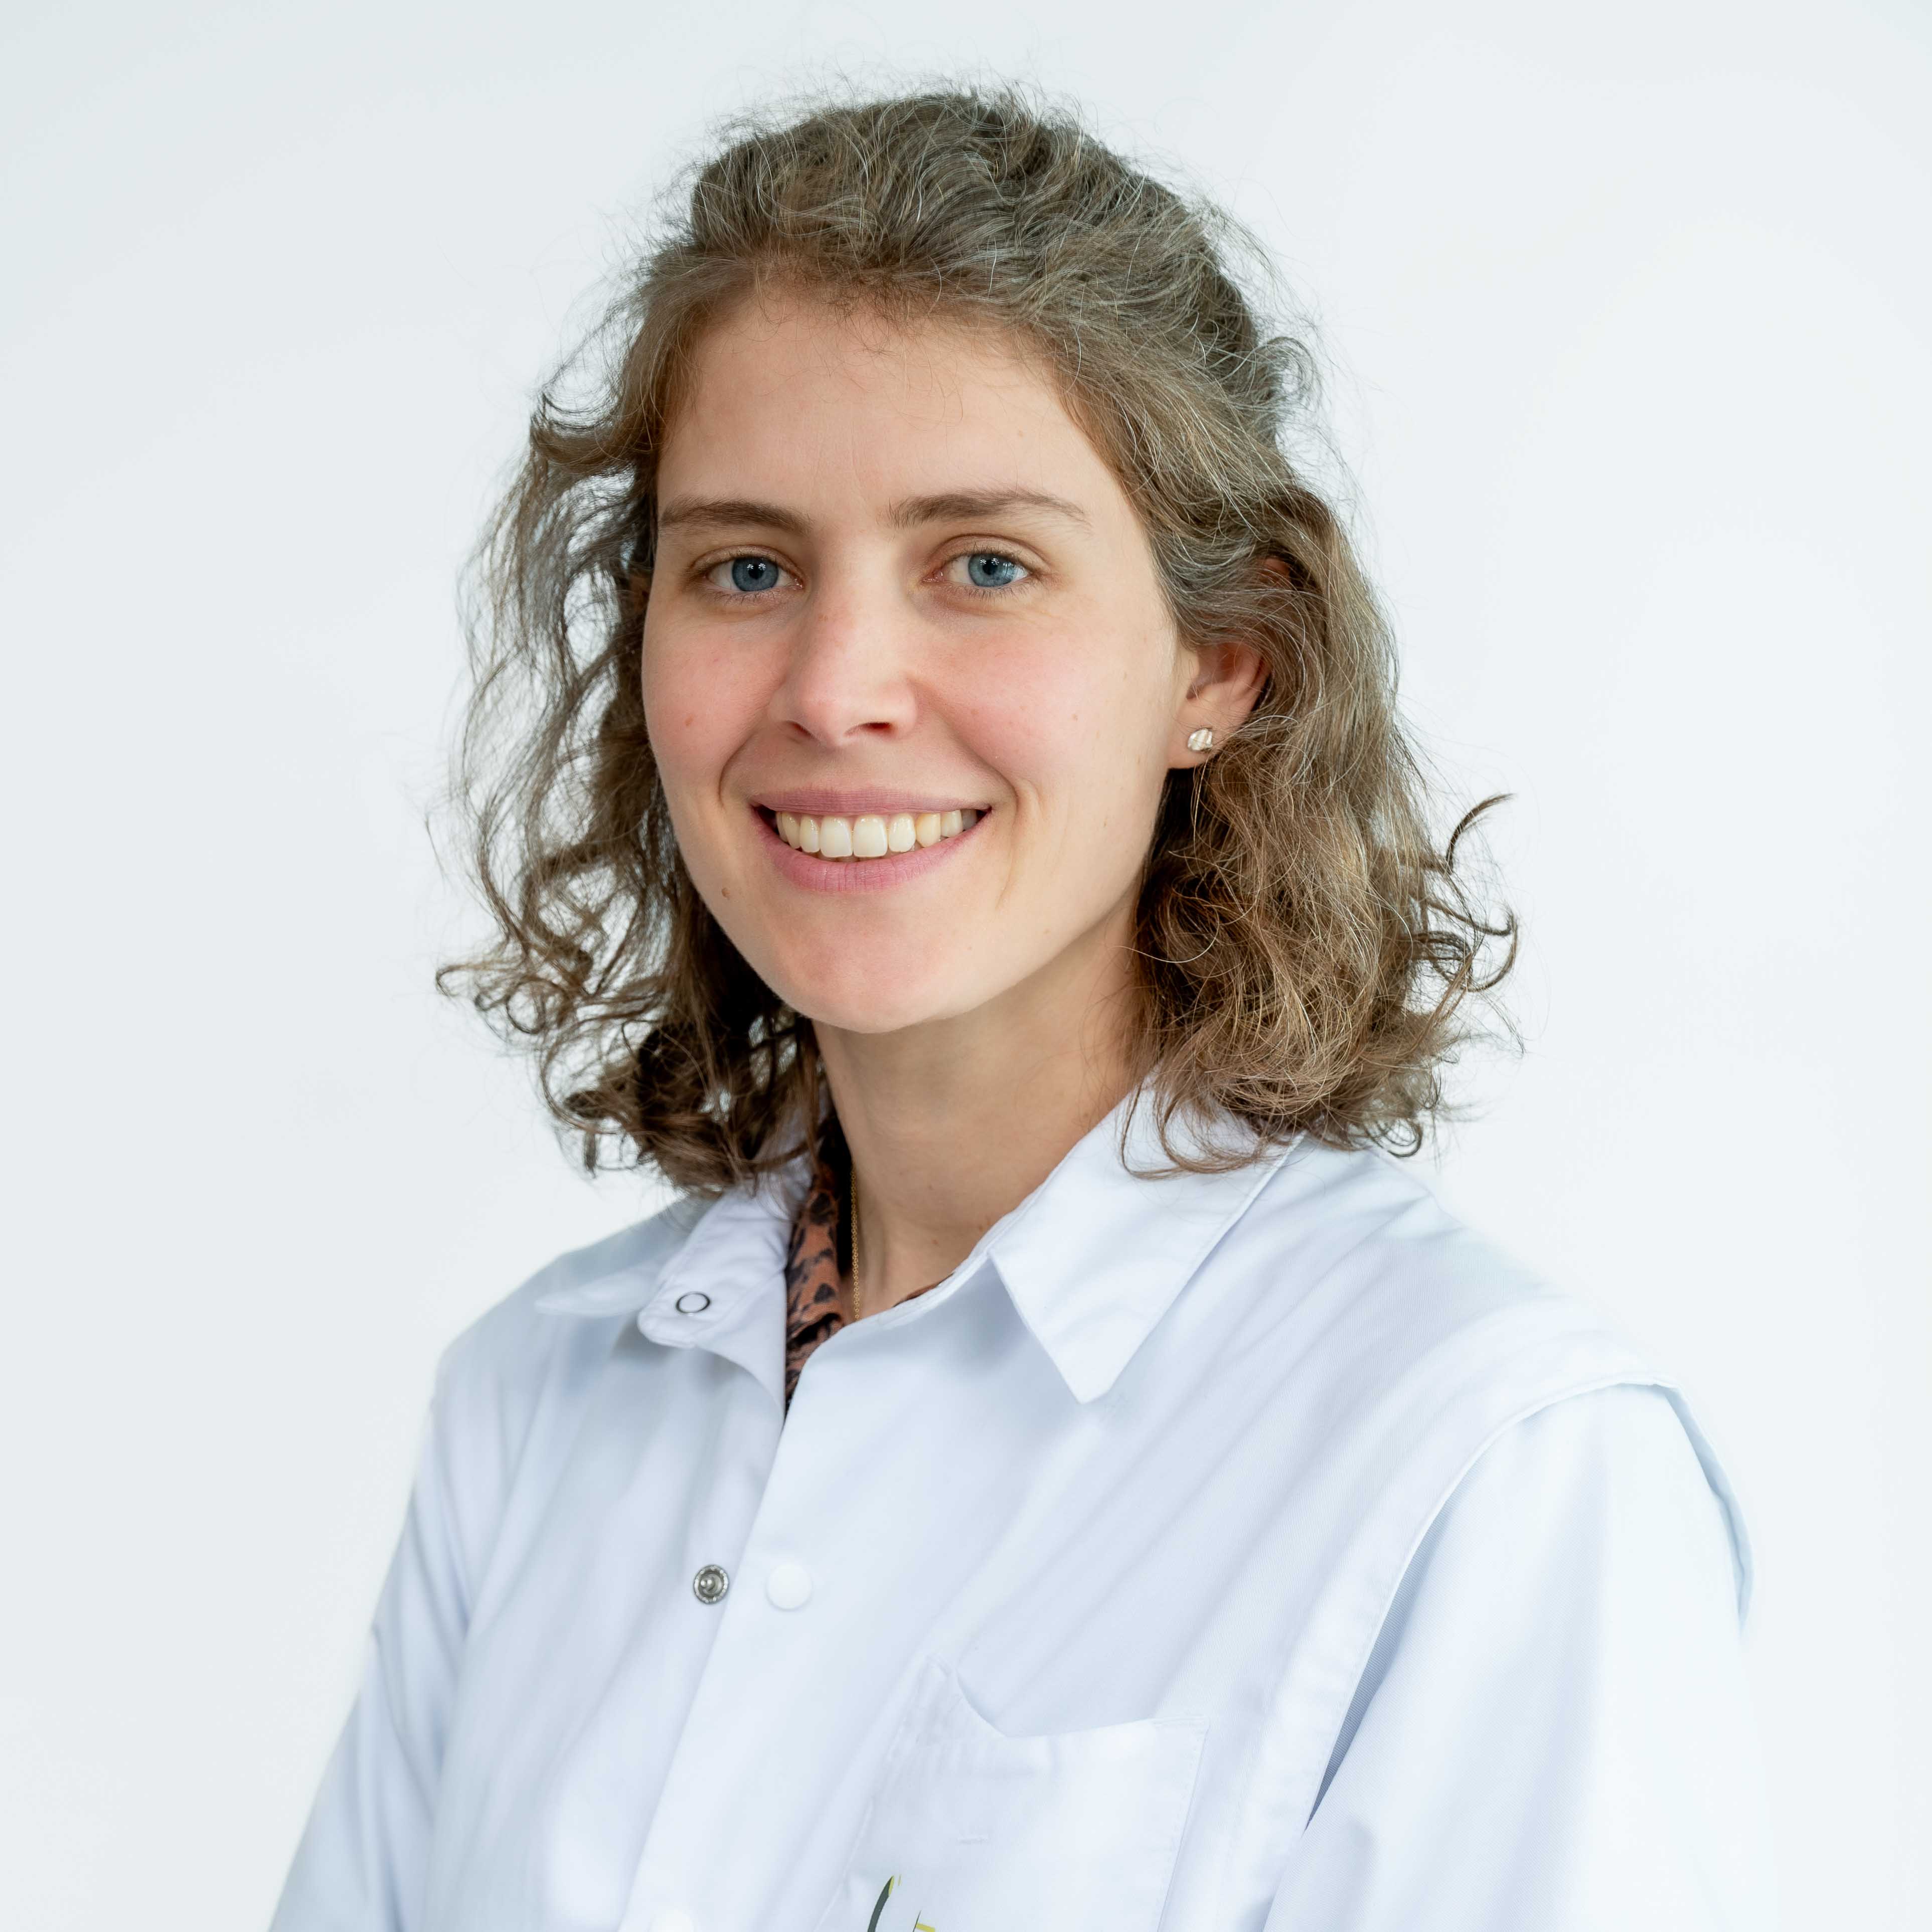 Prof. dr. Karin Melsens